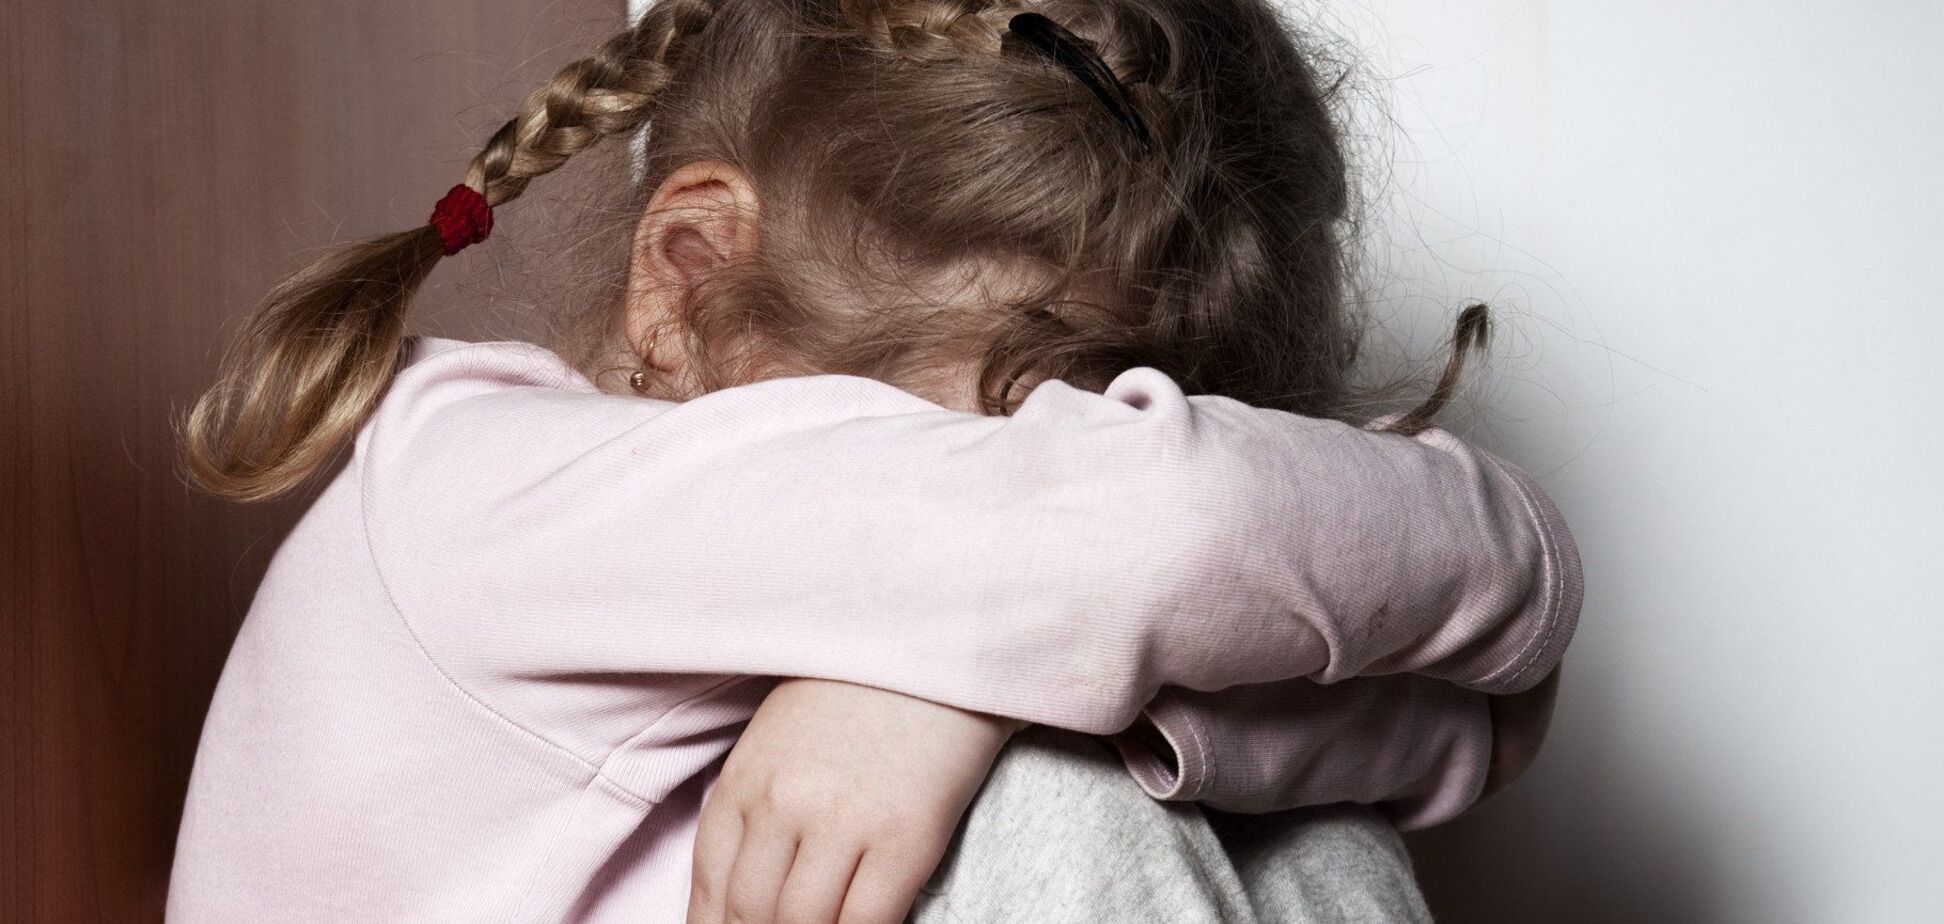 На Закарпатье родственник изнасиловал 11-летнюю девочку: СМИ раскрыли первые подробности